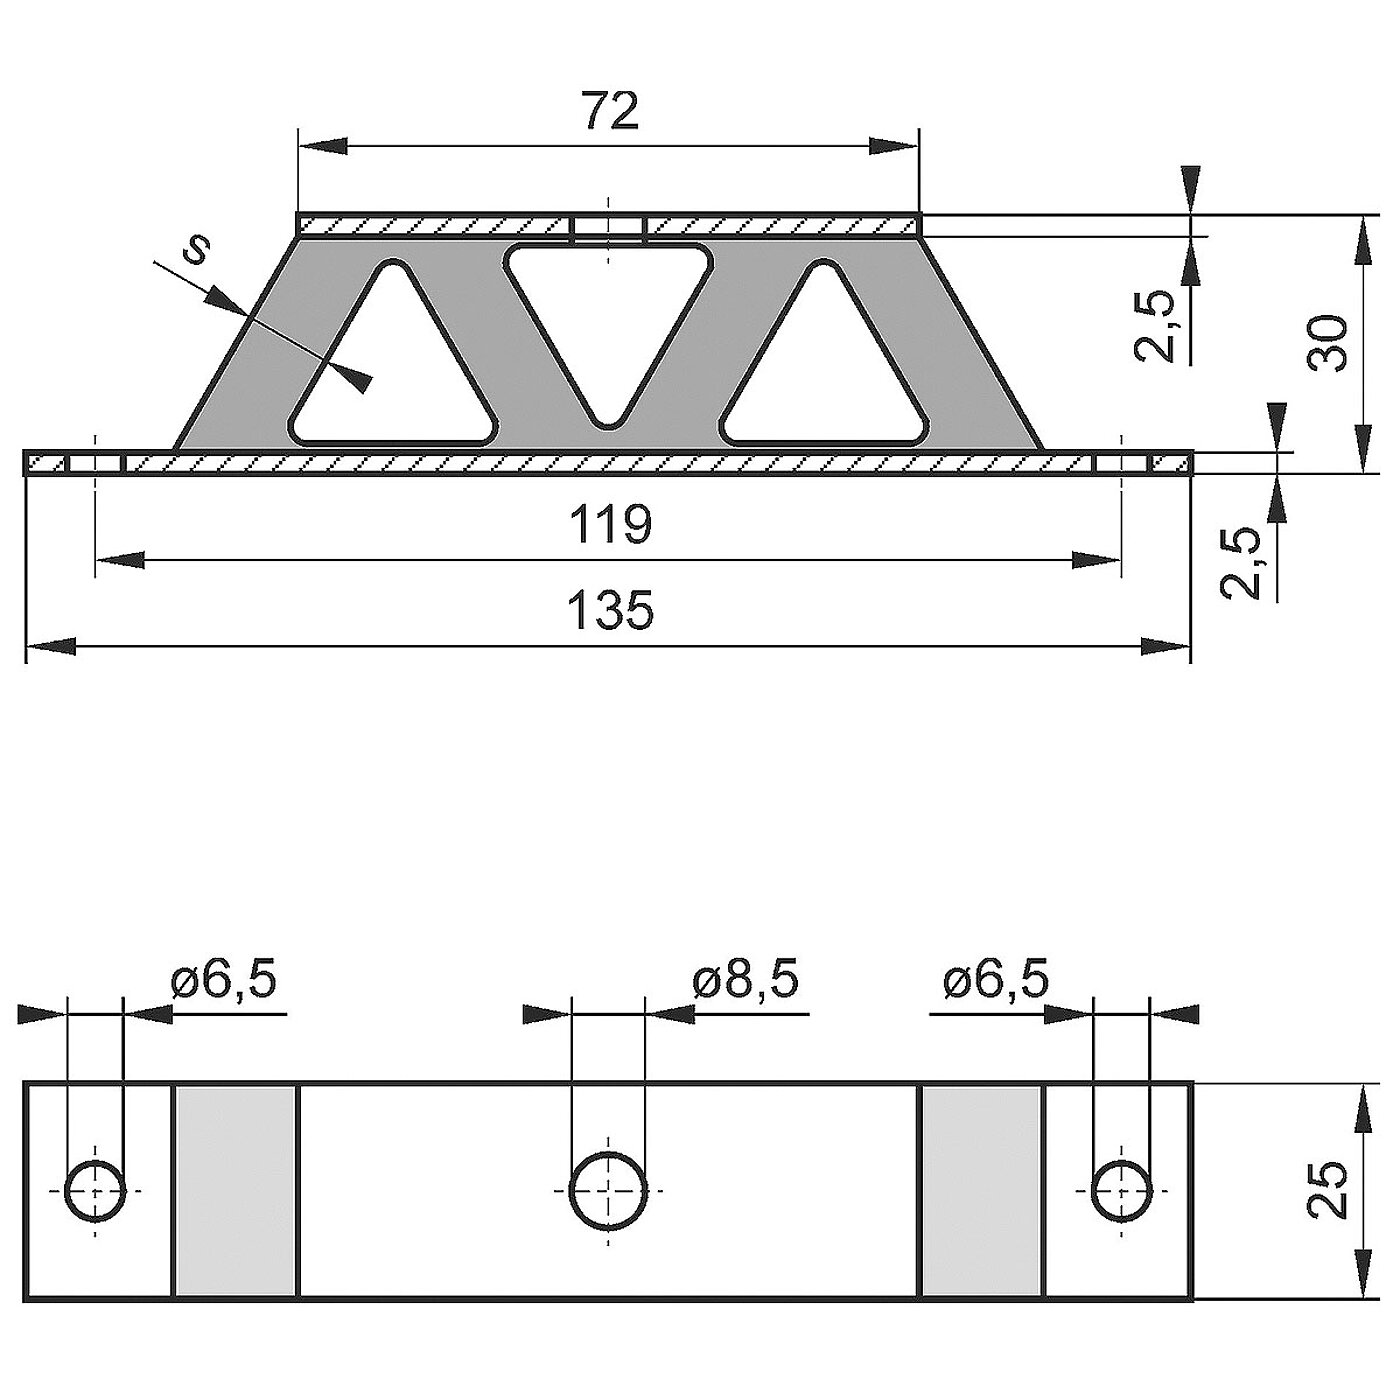 schematische Zeichnung eines Gummi-Metall-Geräteelementes mit Bodenplatte, Trägerplatte und dazwischenliegendem w-förmigen Elastomerkorpus